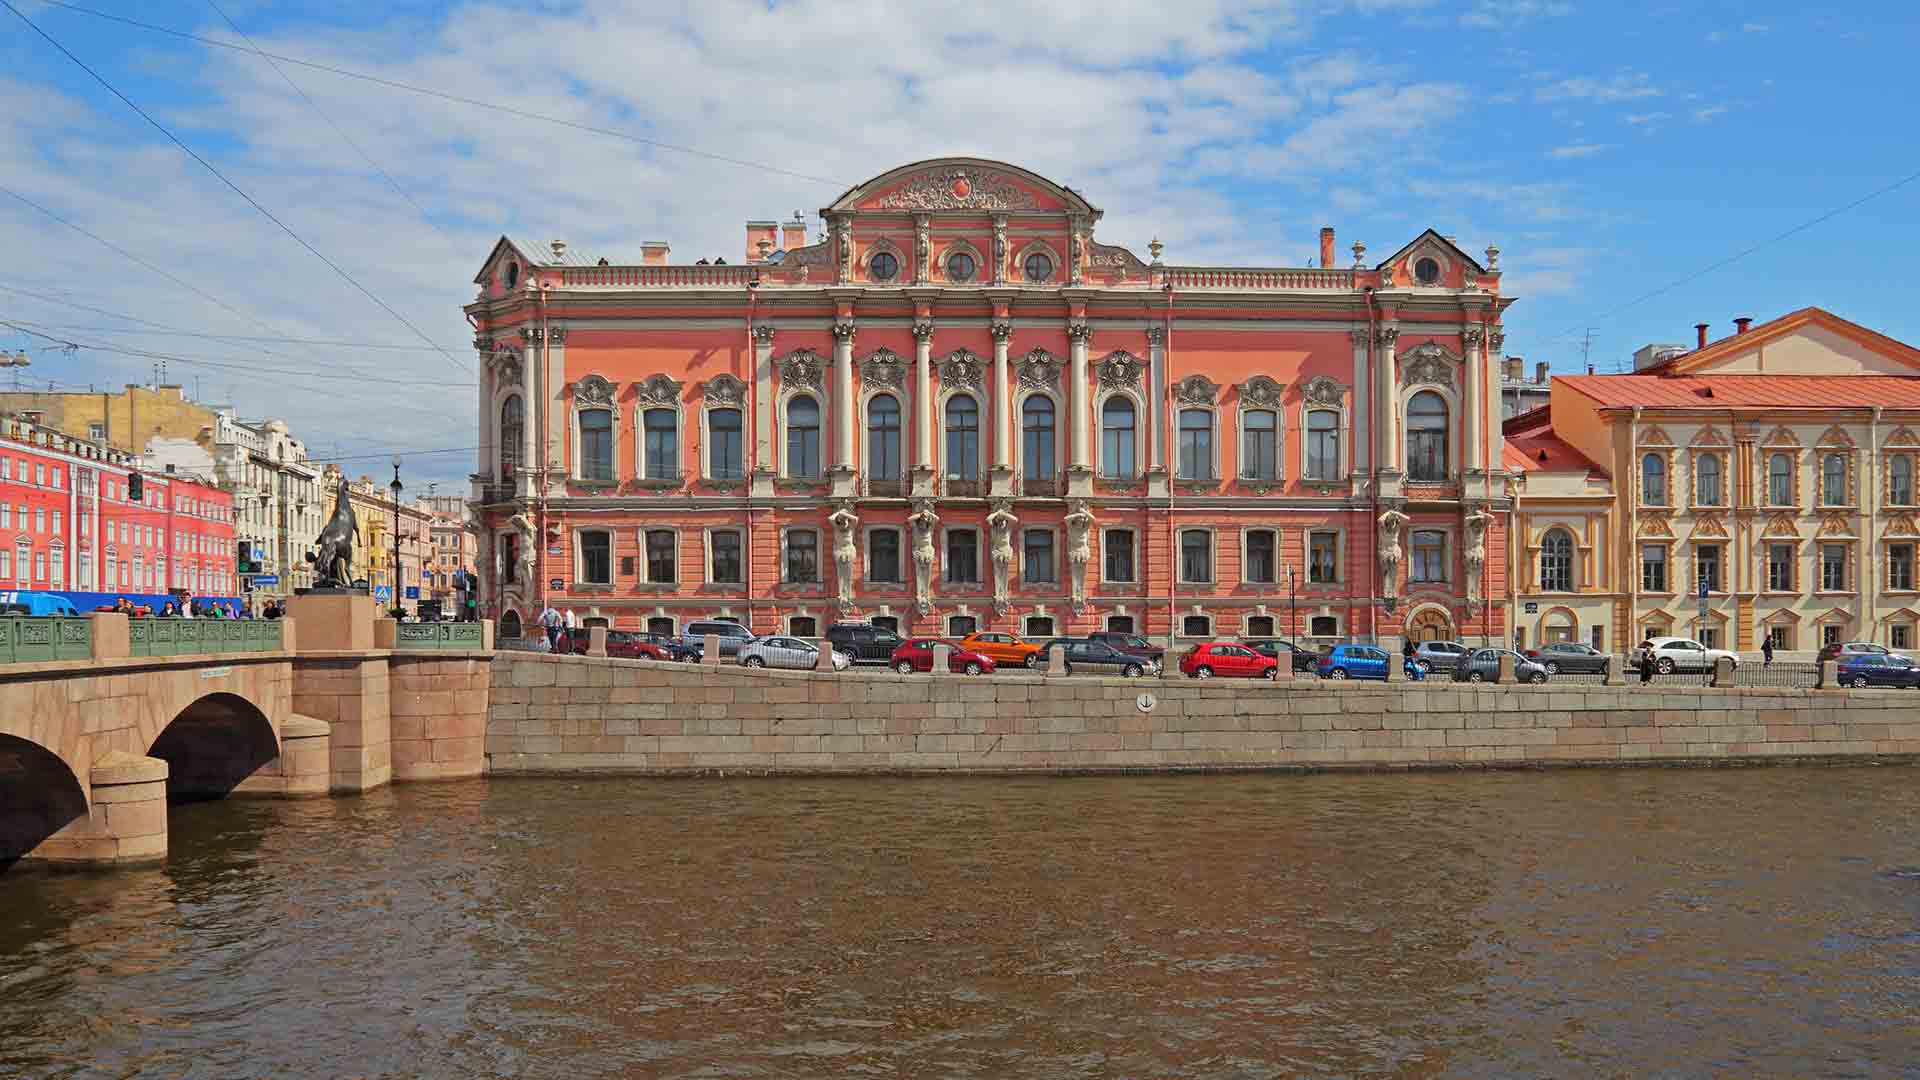 قصربلوسلسکی بلوزرسکی سنت پترزبورگ